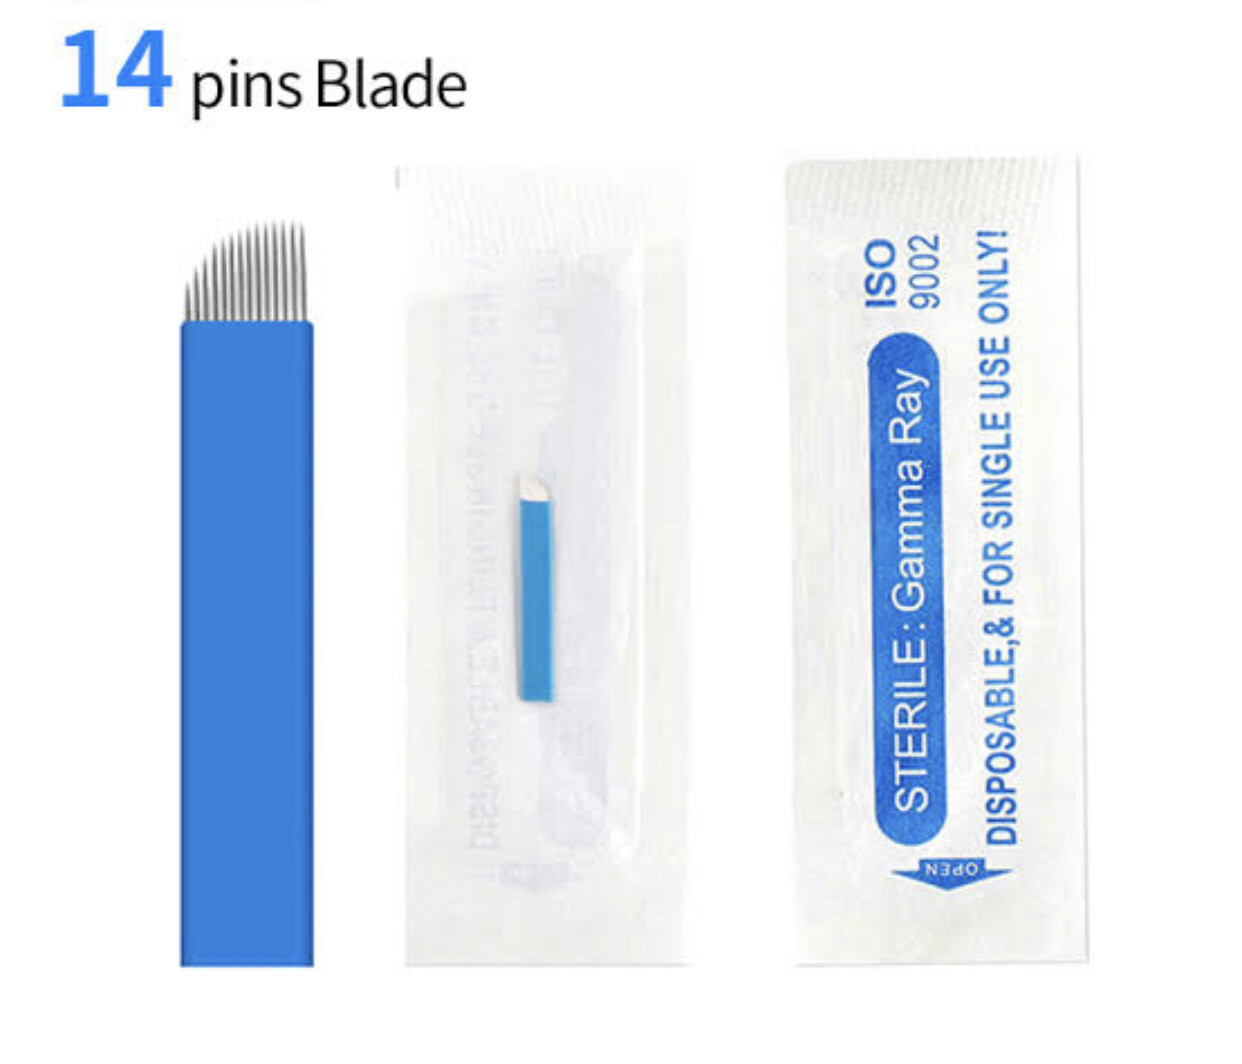 Gamma Ray Blade, Pins: 14 pin